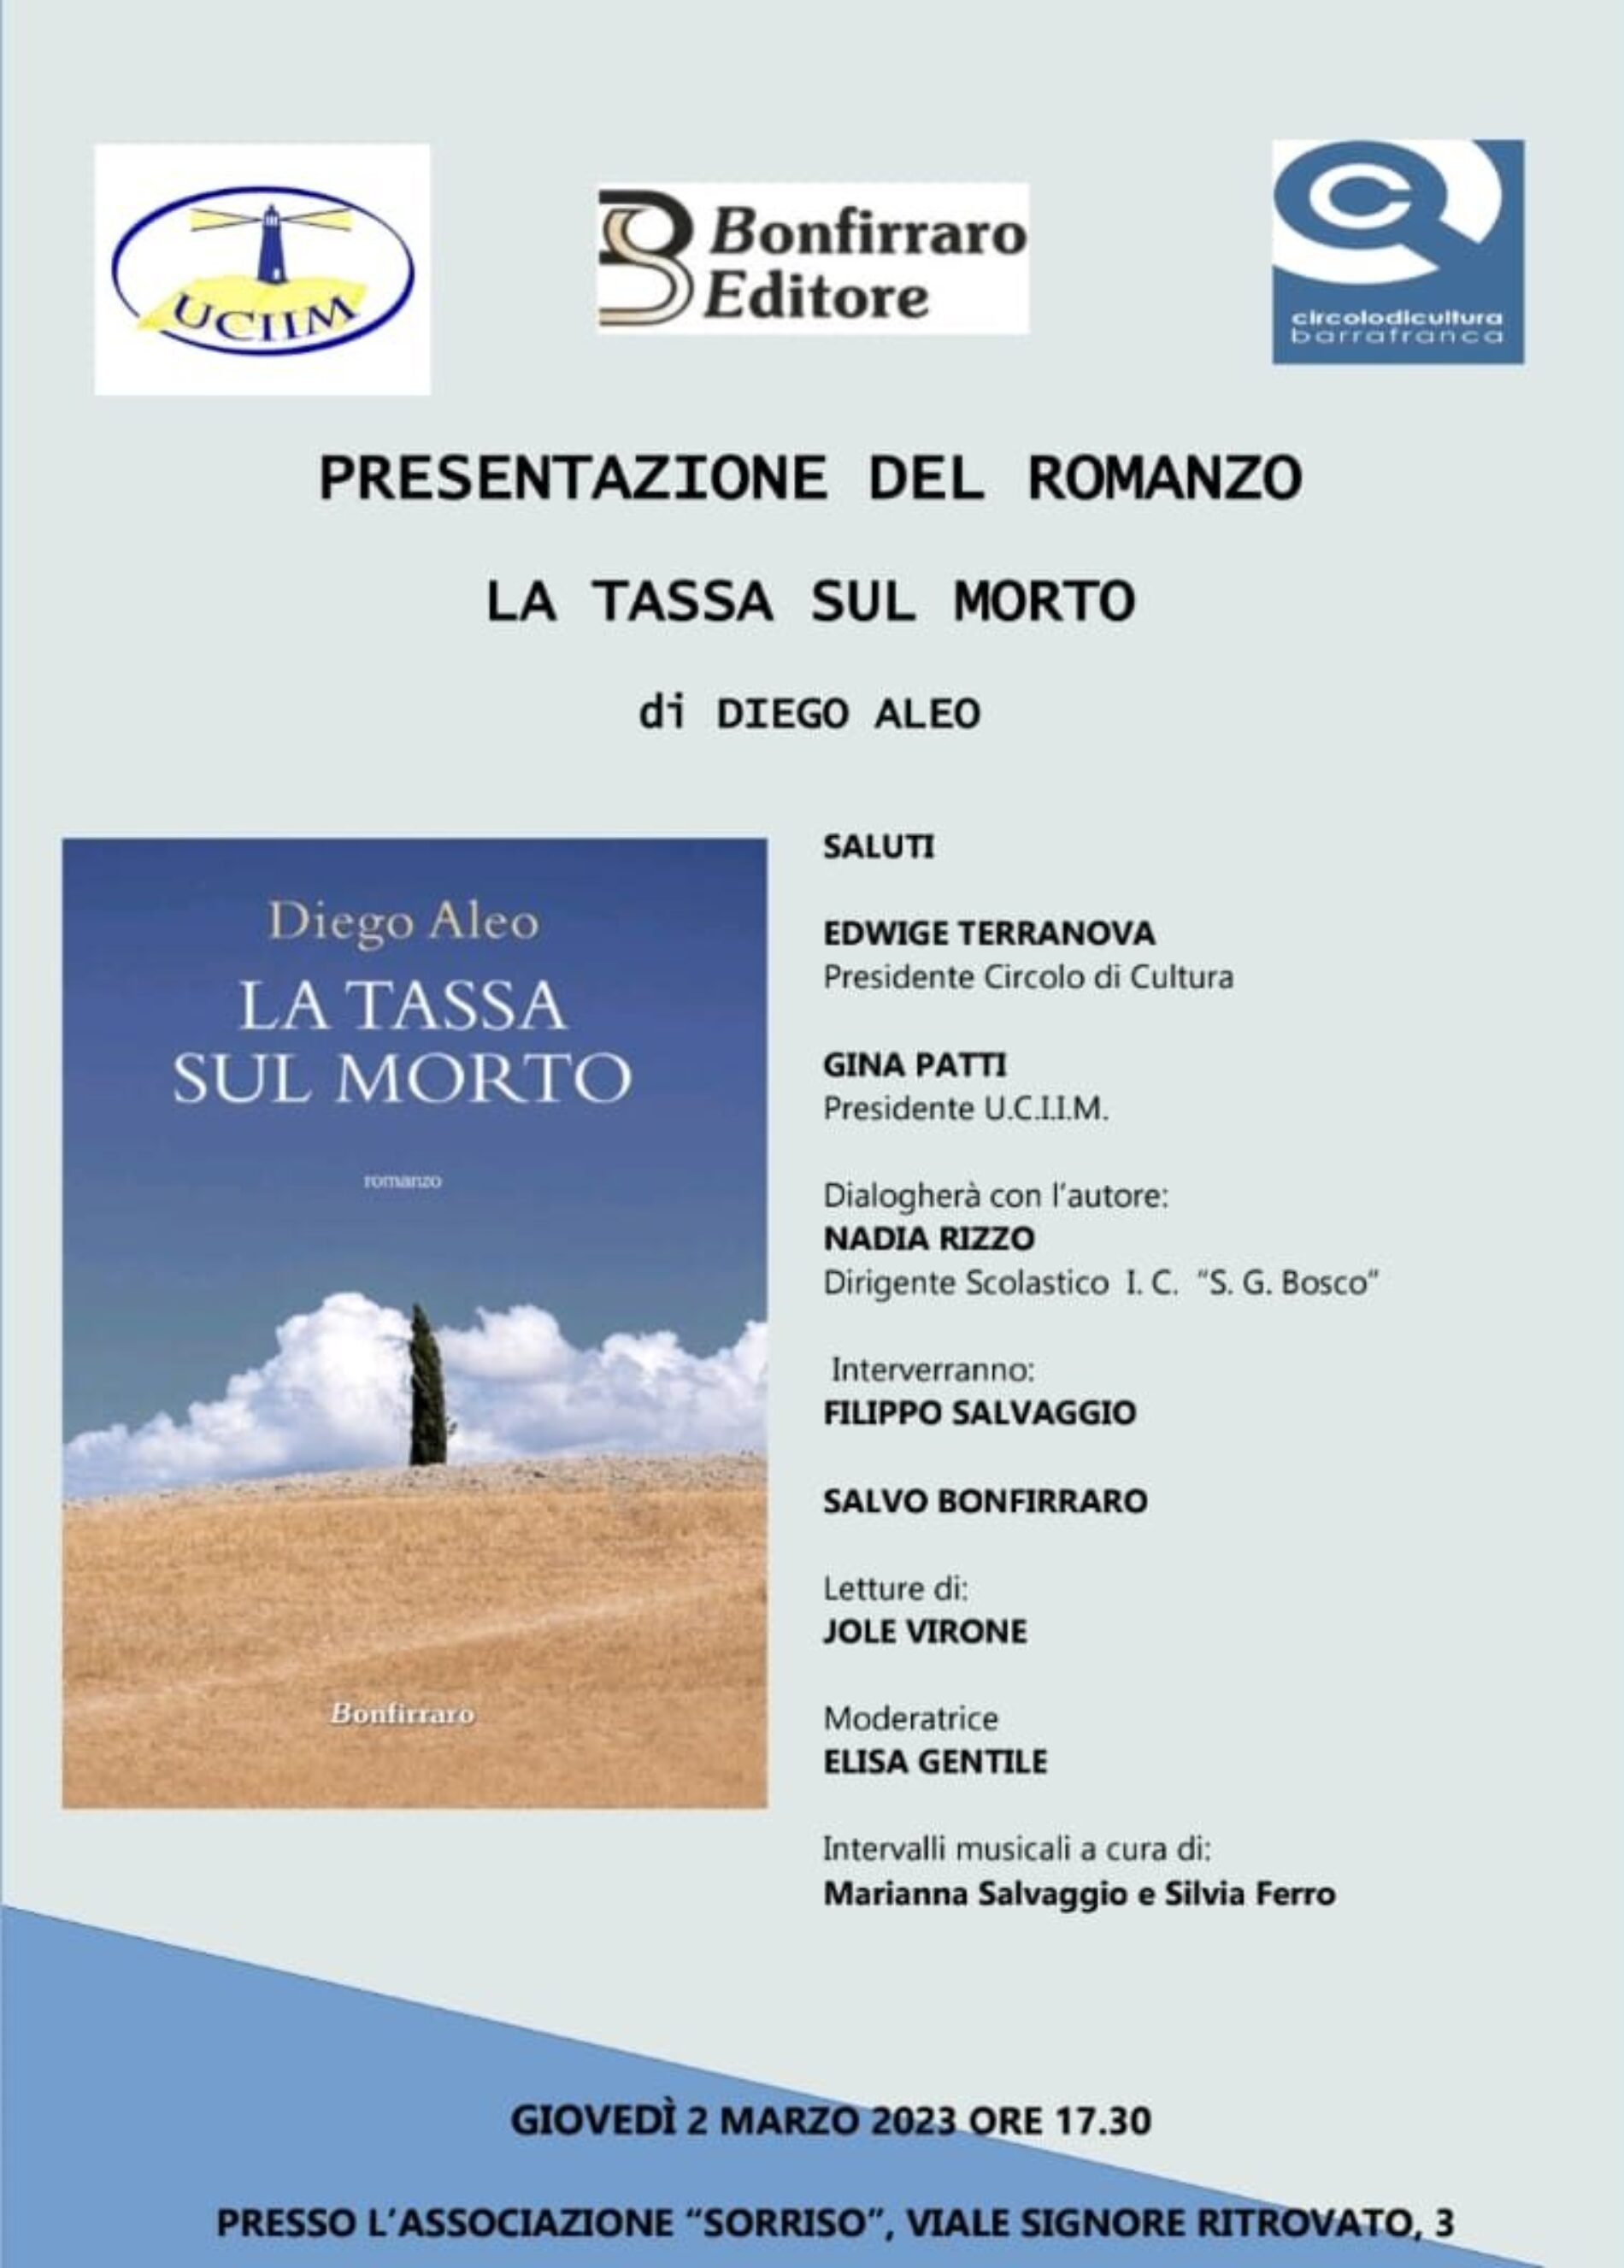 BARRAFRANCA. Presentazione del romanzo “La tassa sul morto”, autore Diego Aleo, Bonfirraro Editore.